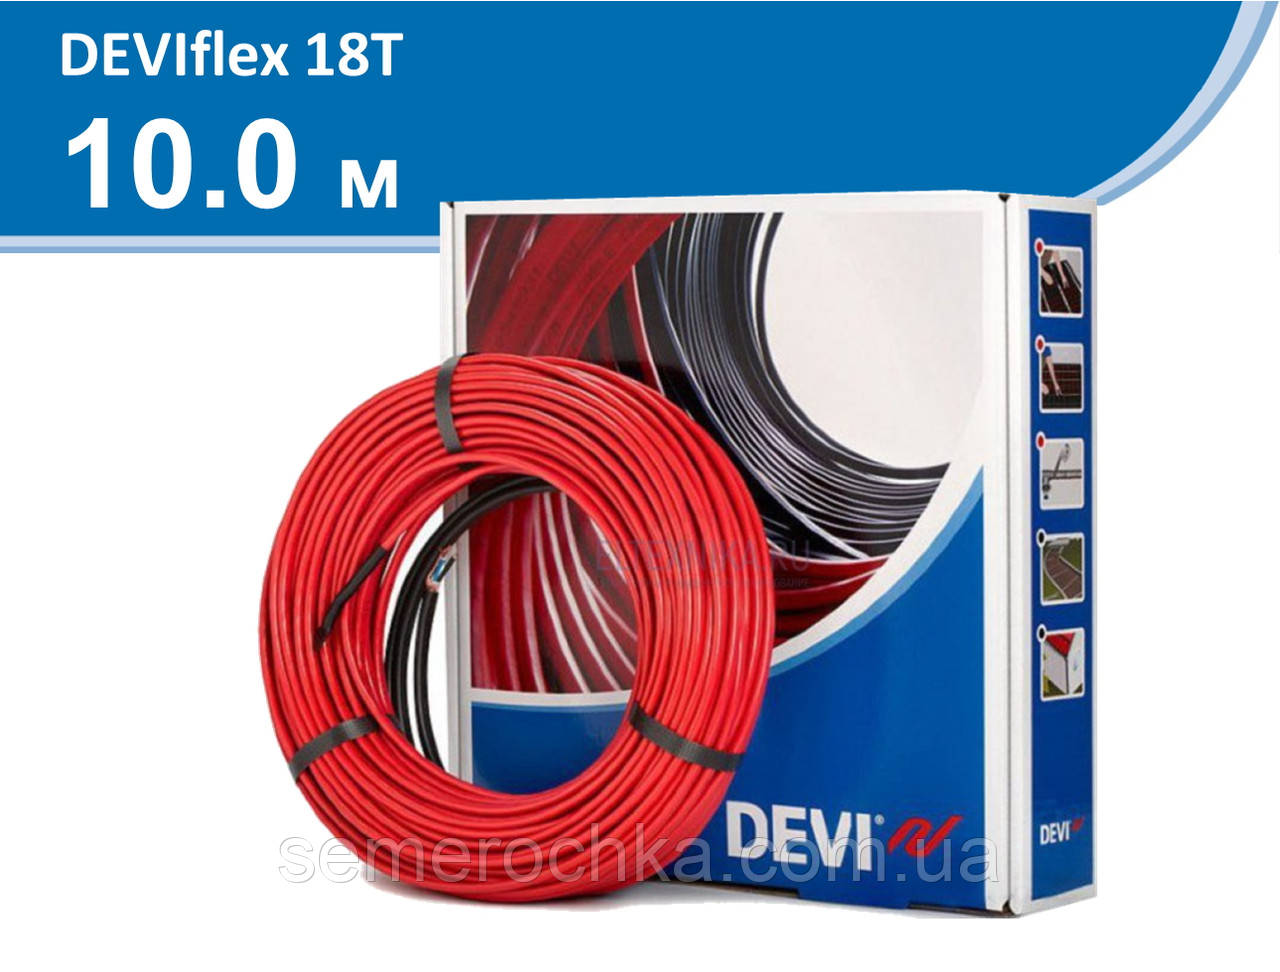 Deviflex 18T кабель 10 м 200 Вт (1,3м2) тепла підлога Devi, електричний нагрівальний Діві, у стяжку двожильний